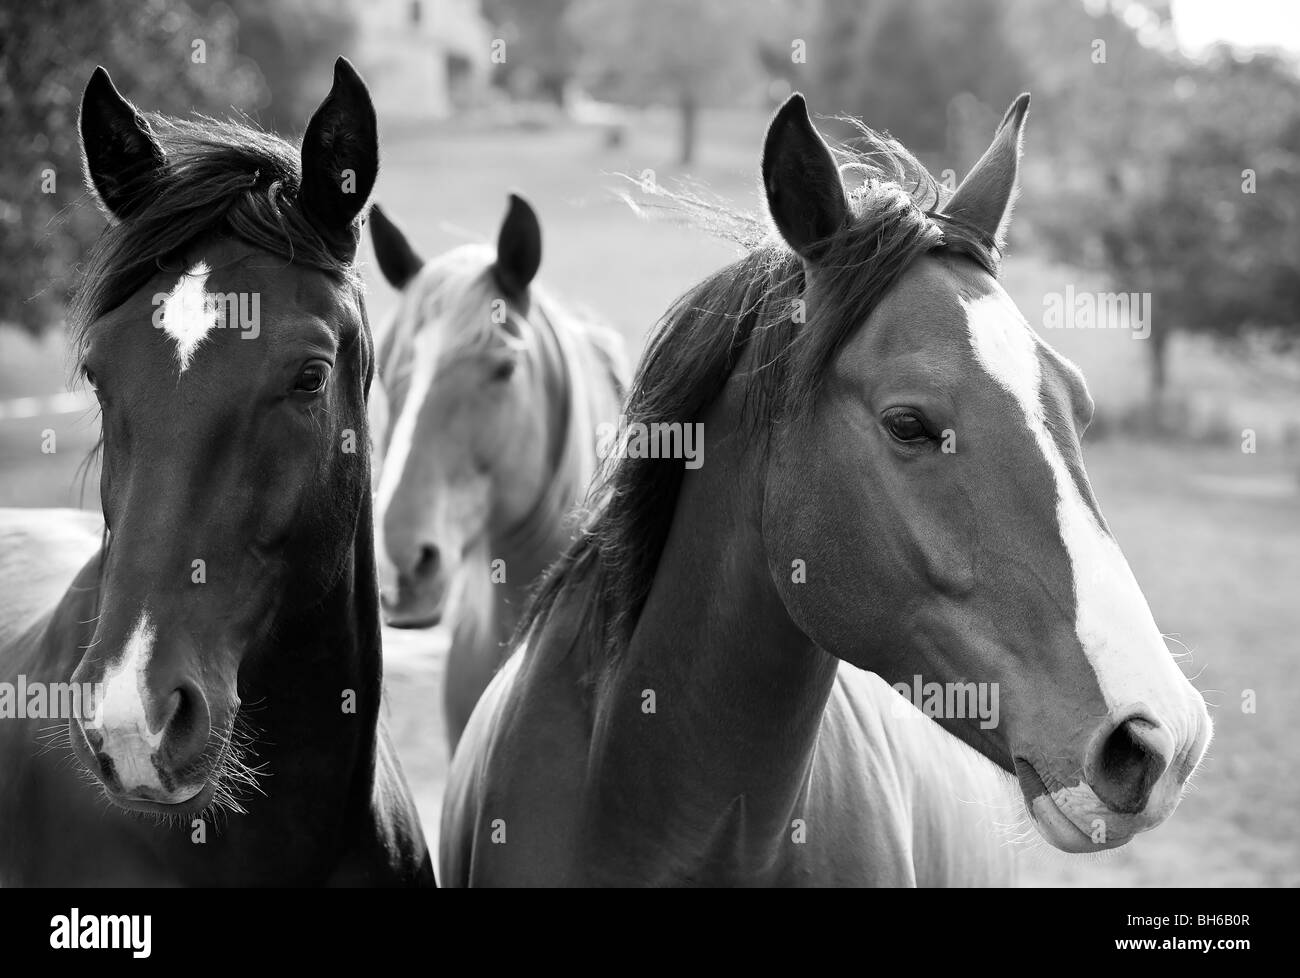 Trois chevaux dans un pré ensoleillé en Noir et blanc , Périgord Noir, Dordogne, France. Banque D'Images